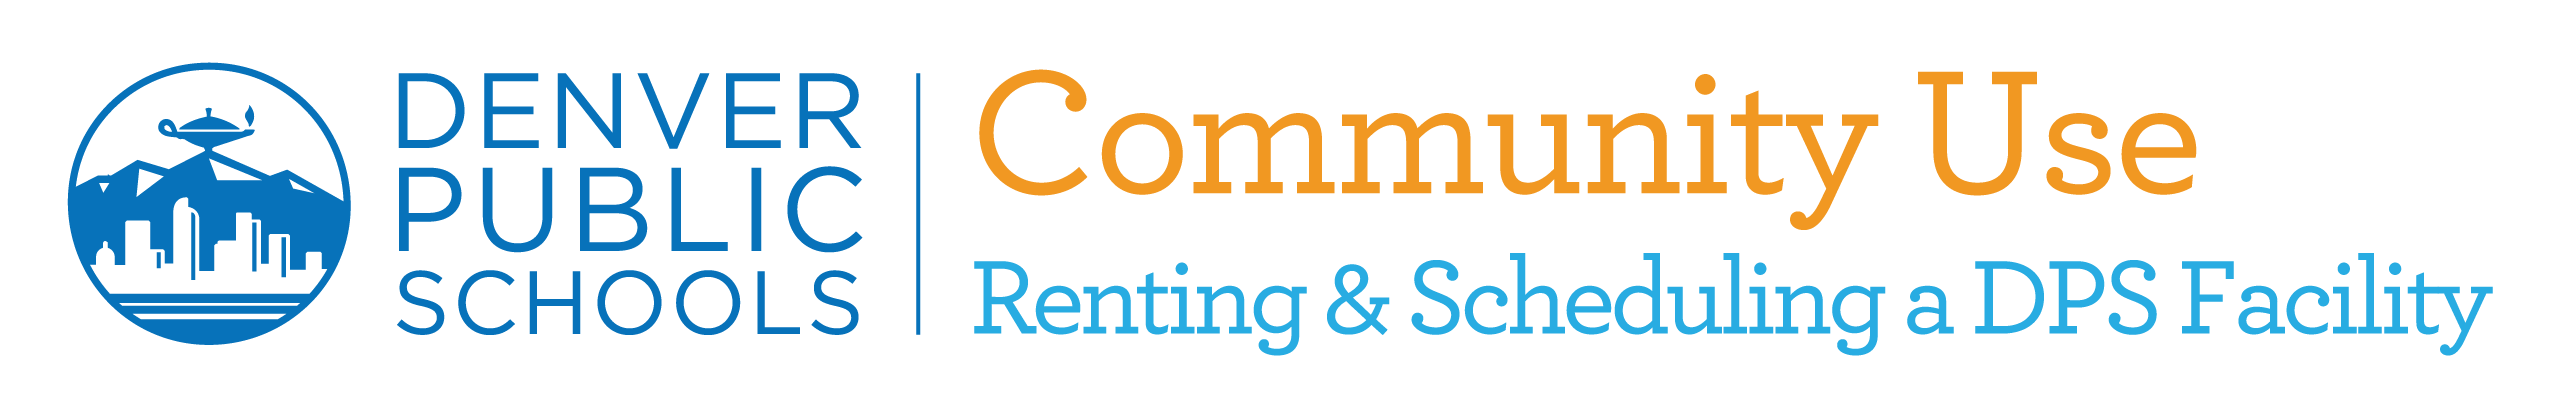 Community Use logo